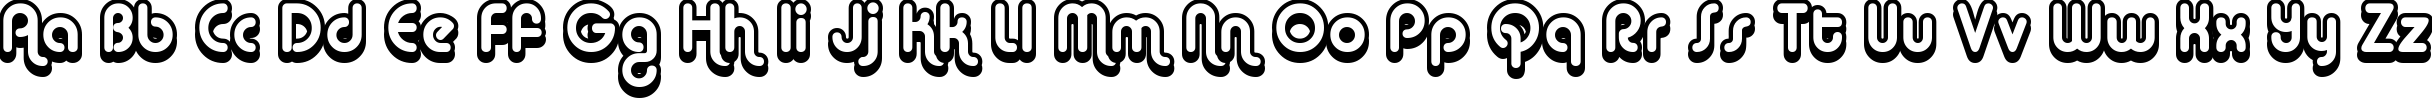 Пример написания английского алфавита шрифтом Alba Super